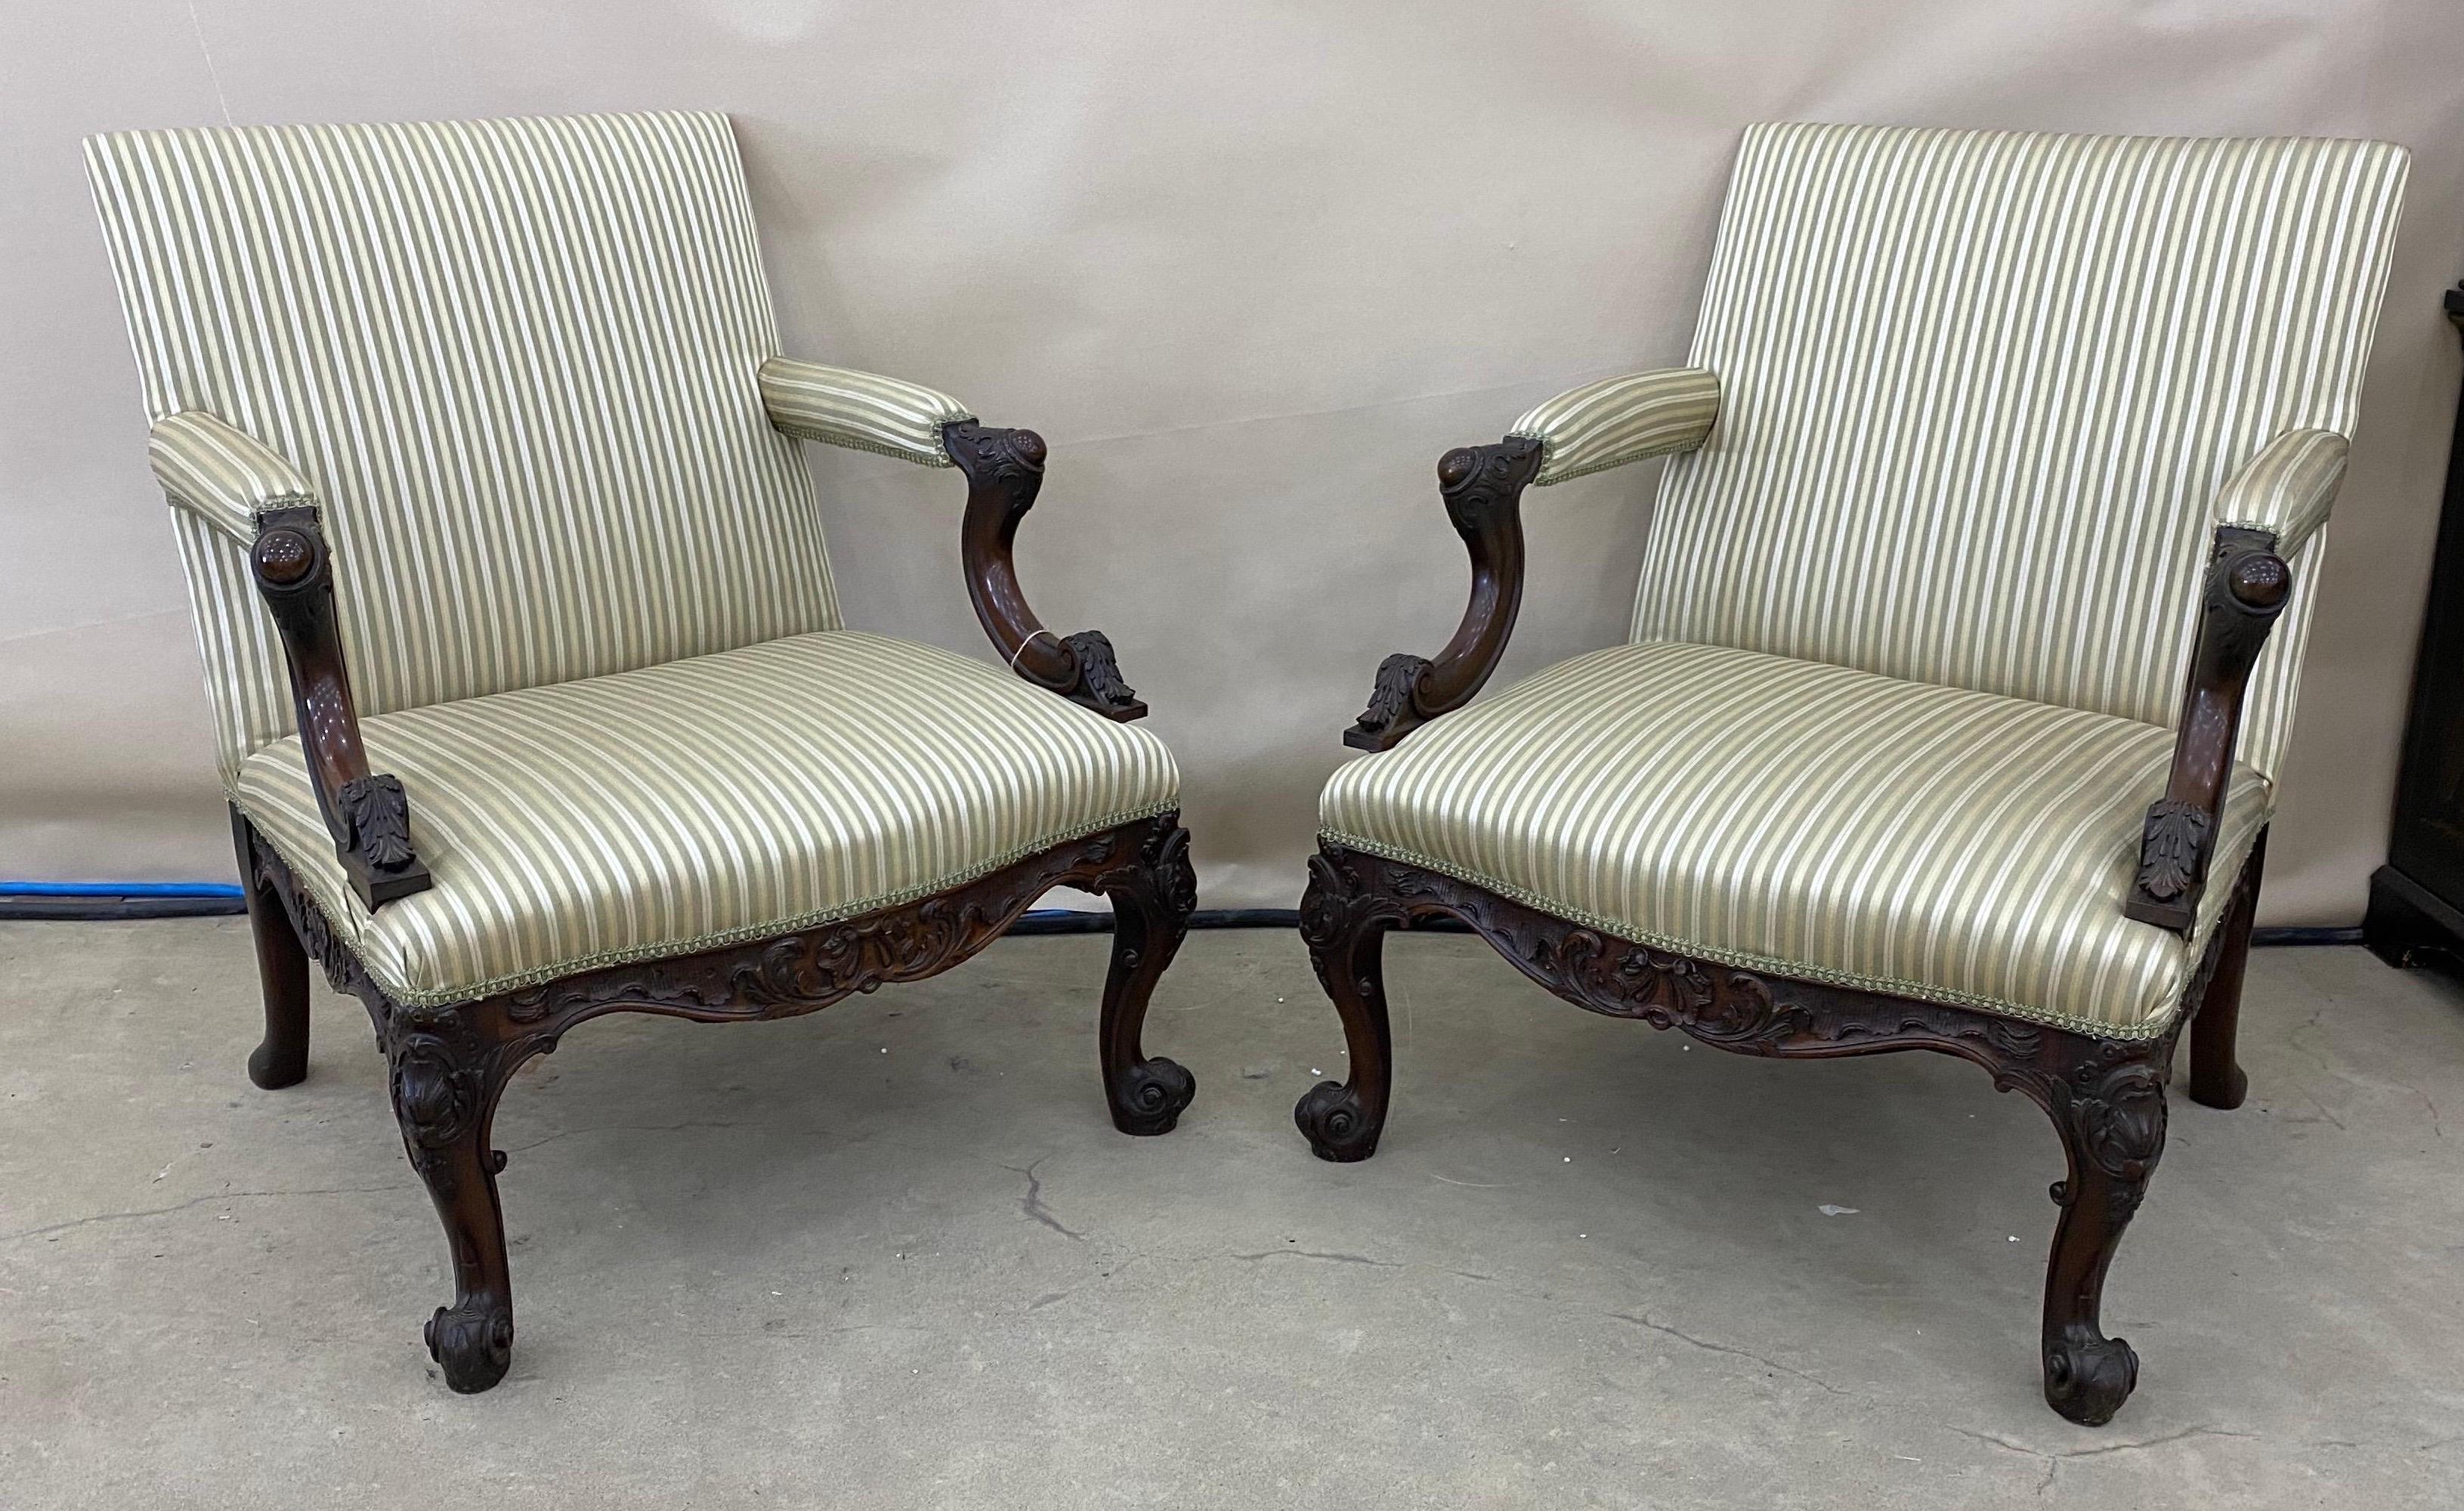 Belle paire de chaises Gainsborough en acajou de style géorgien du début du XIXe siècle. Récemment retapissé.